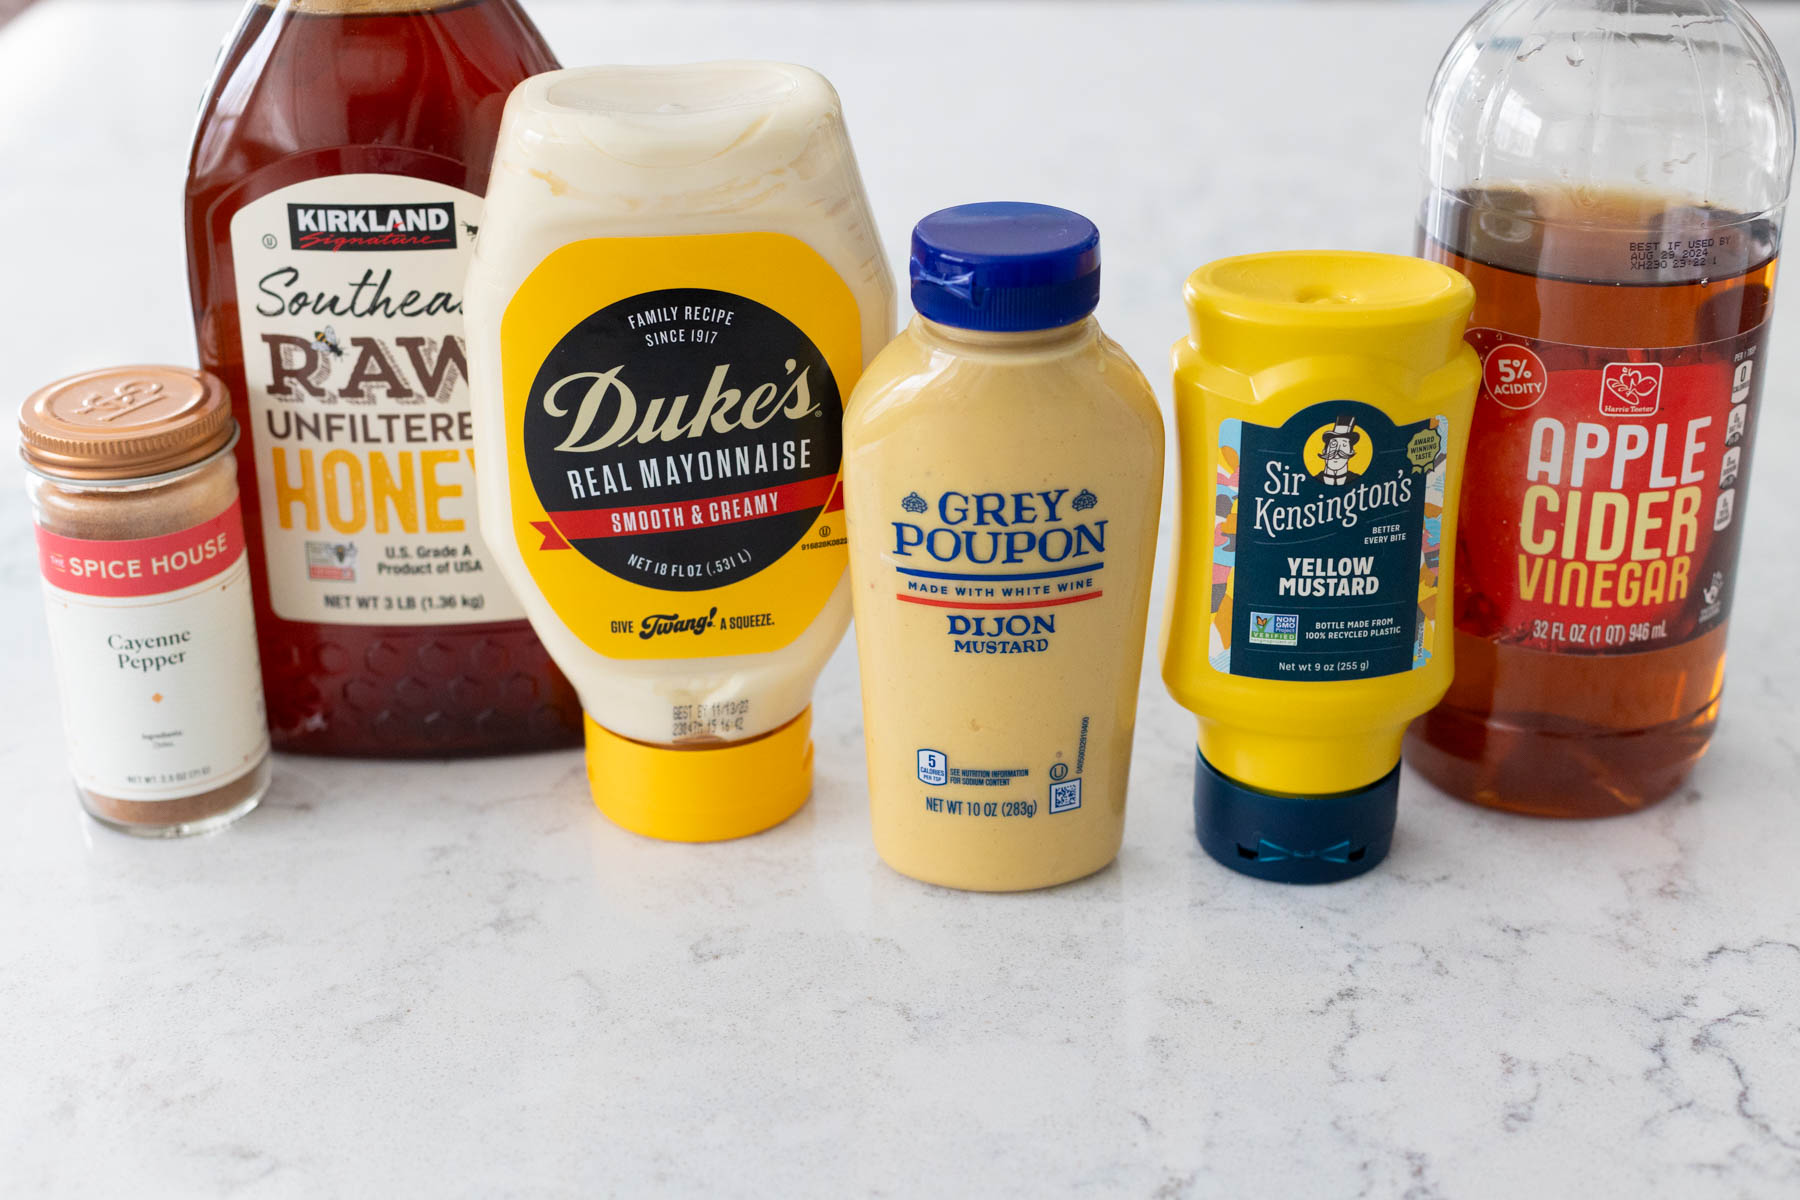 The ingredients to make homemade honey mustard dip